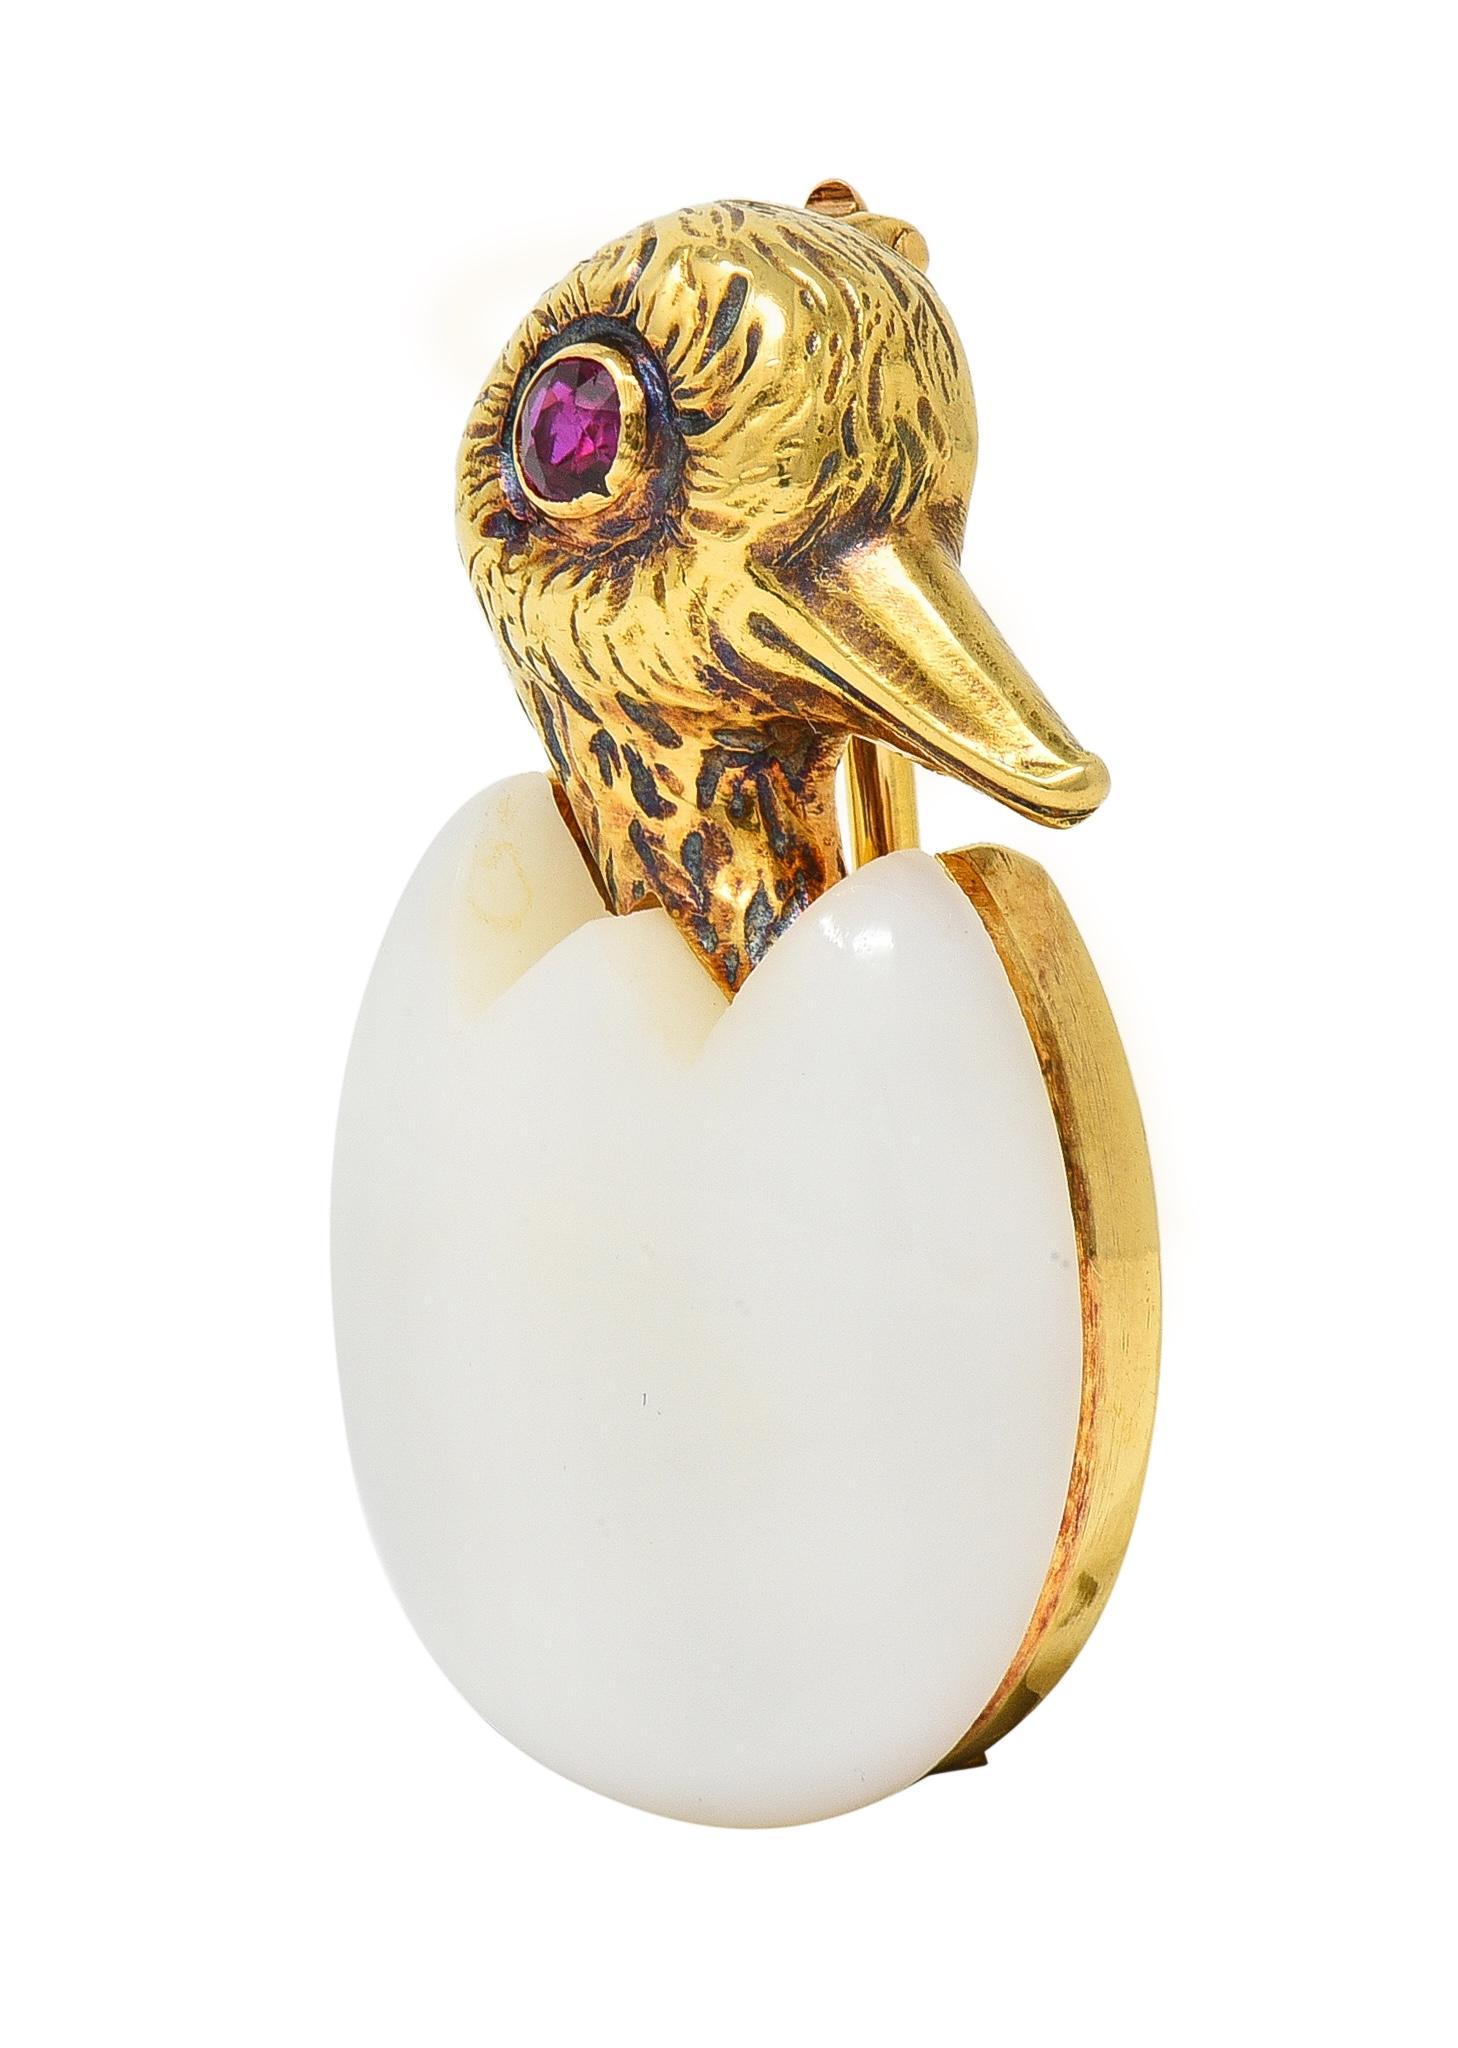 Conçu comme un oiseau stylisé en or éclosant d'un œuf en calcédoine sculpté.
Blanc translucide dans la couleur du corps - mesurant 18,5 x 20,0 mm 
Accentué par une tête texturée en plumes gravées et un œil en rubis
Taille ronde et poids total